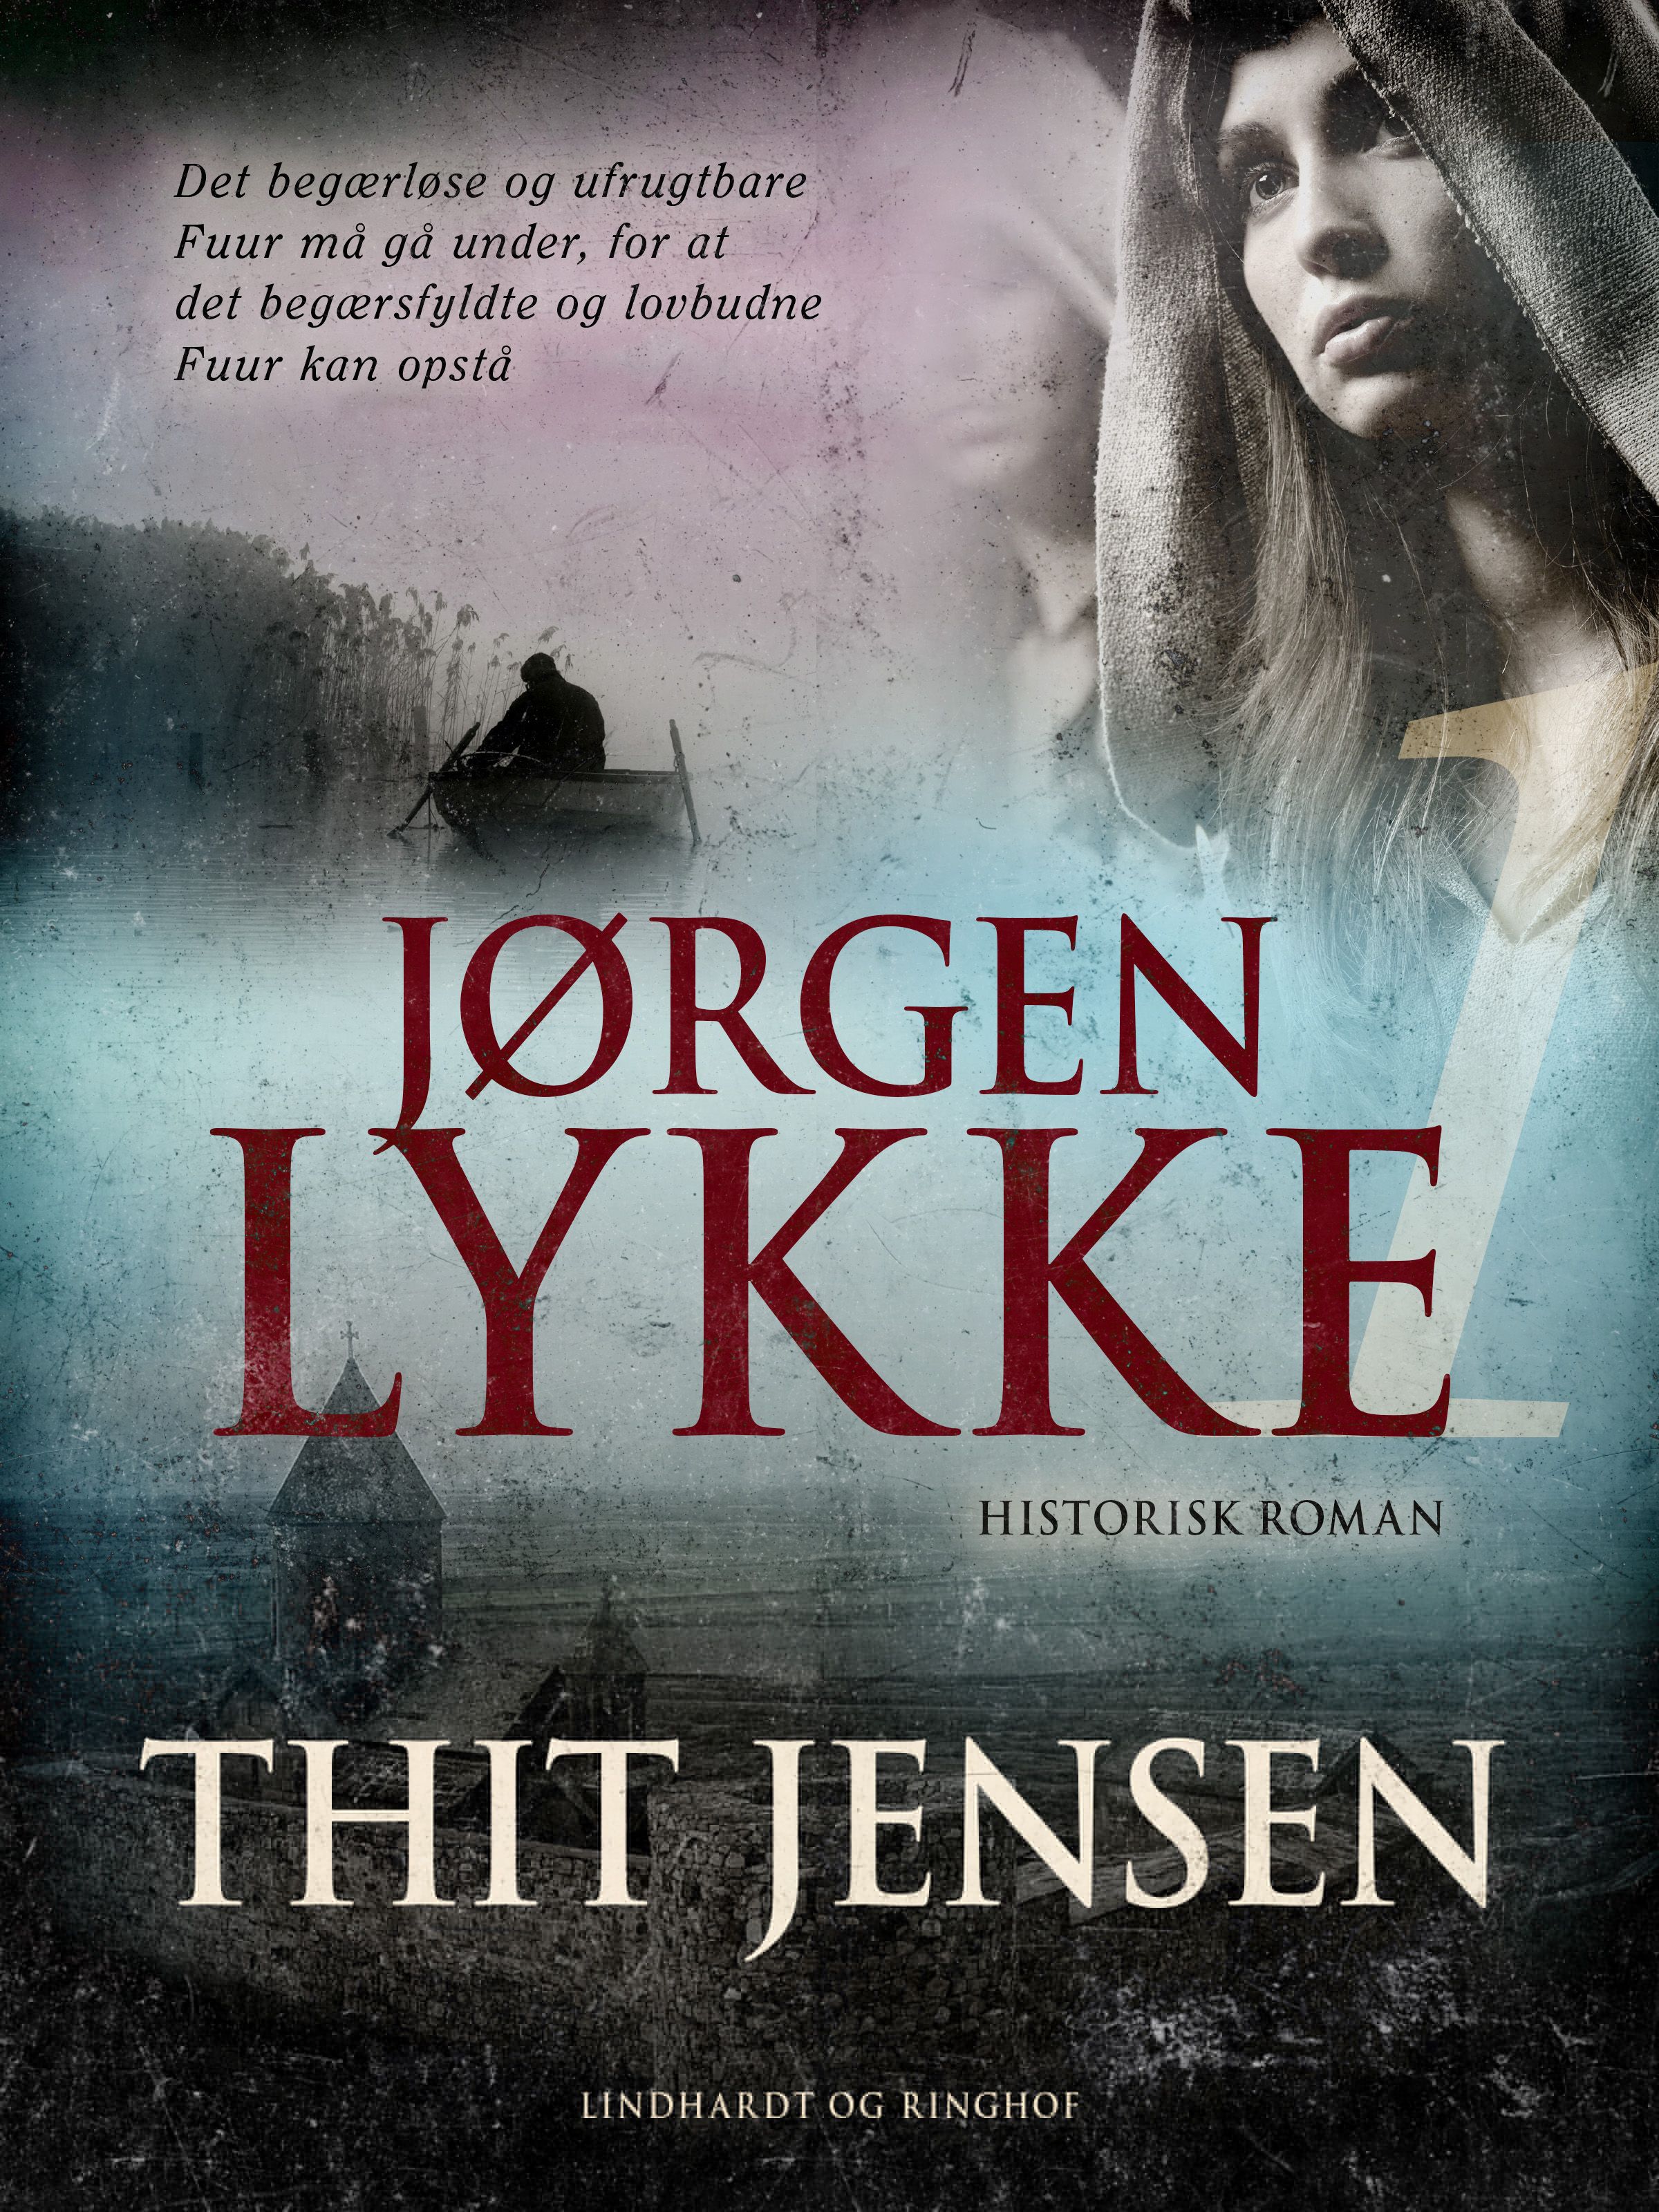 Jørgen Lykke: bind 1, audiobook by Thit Jensen